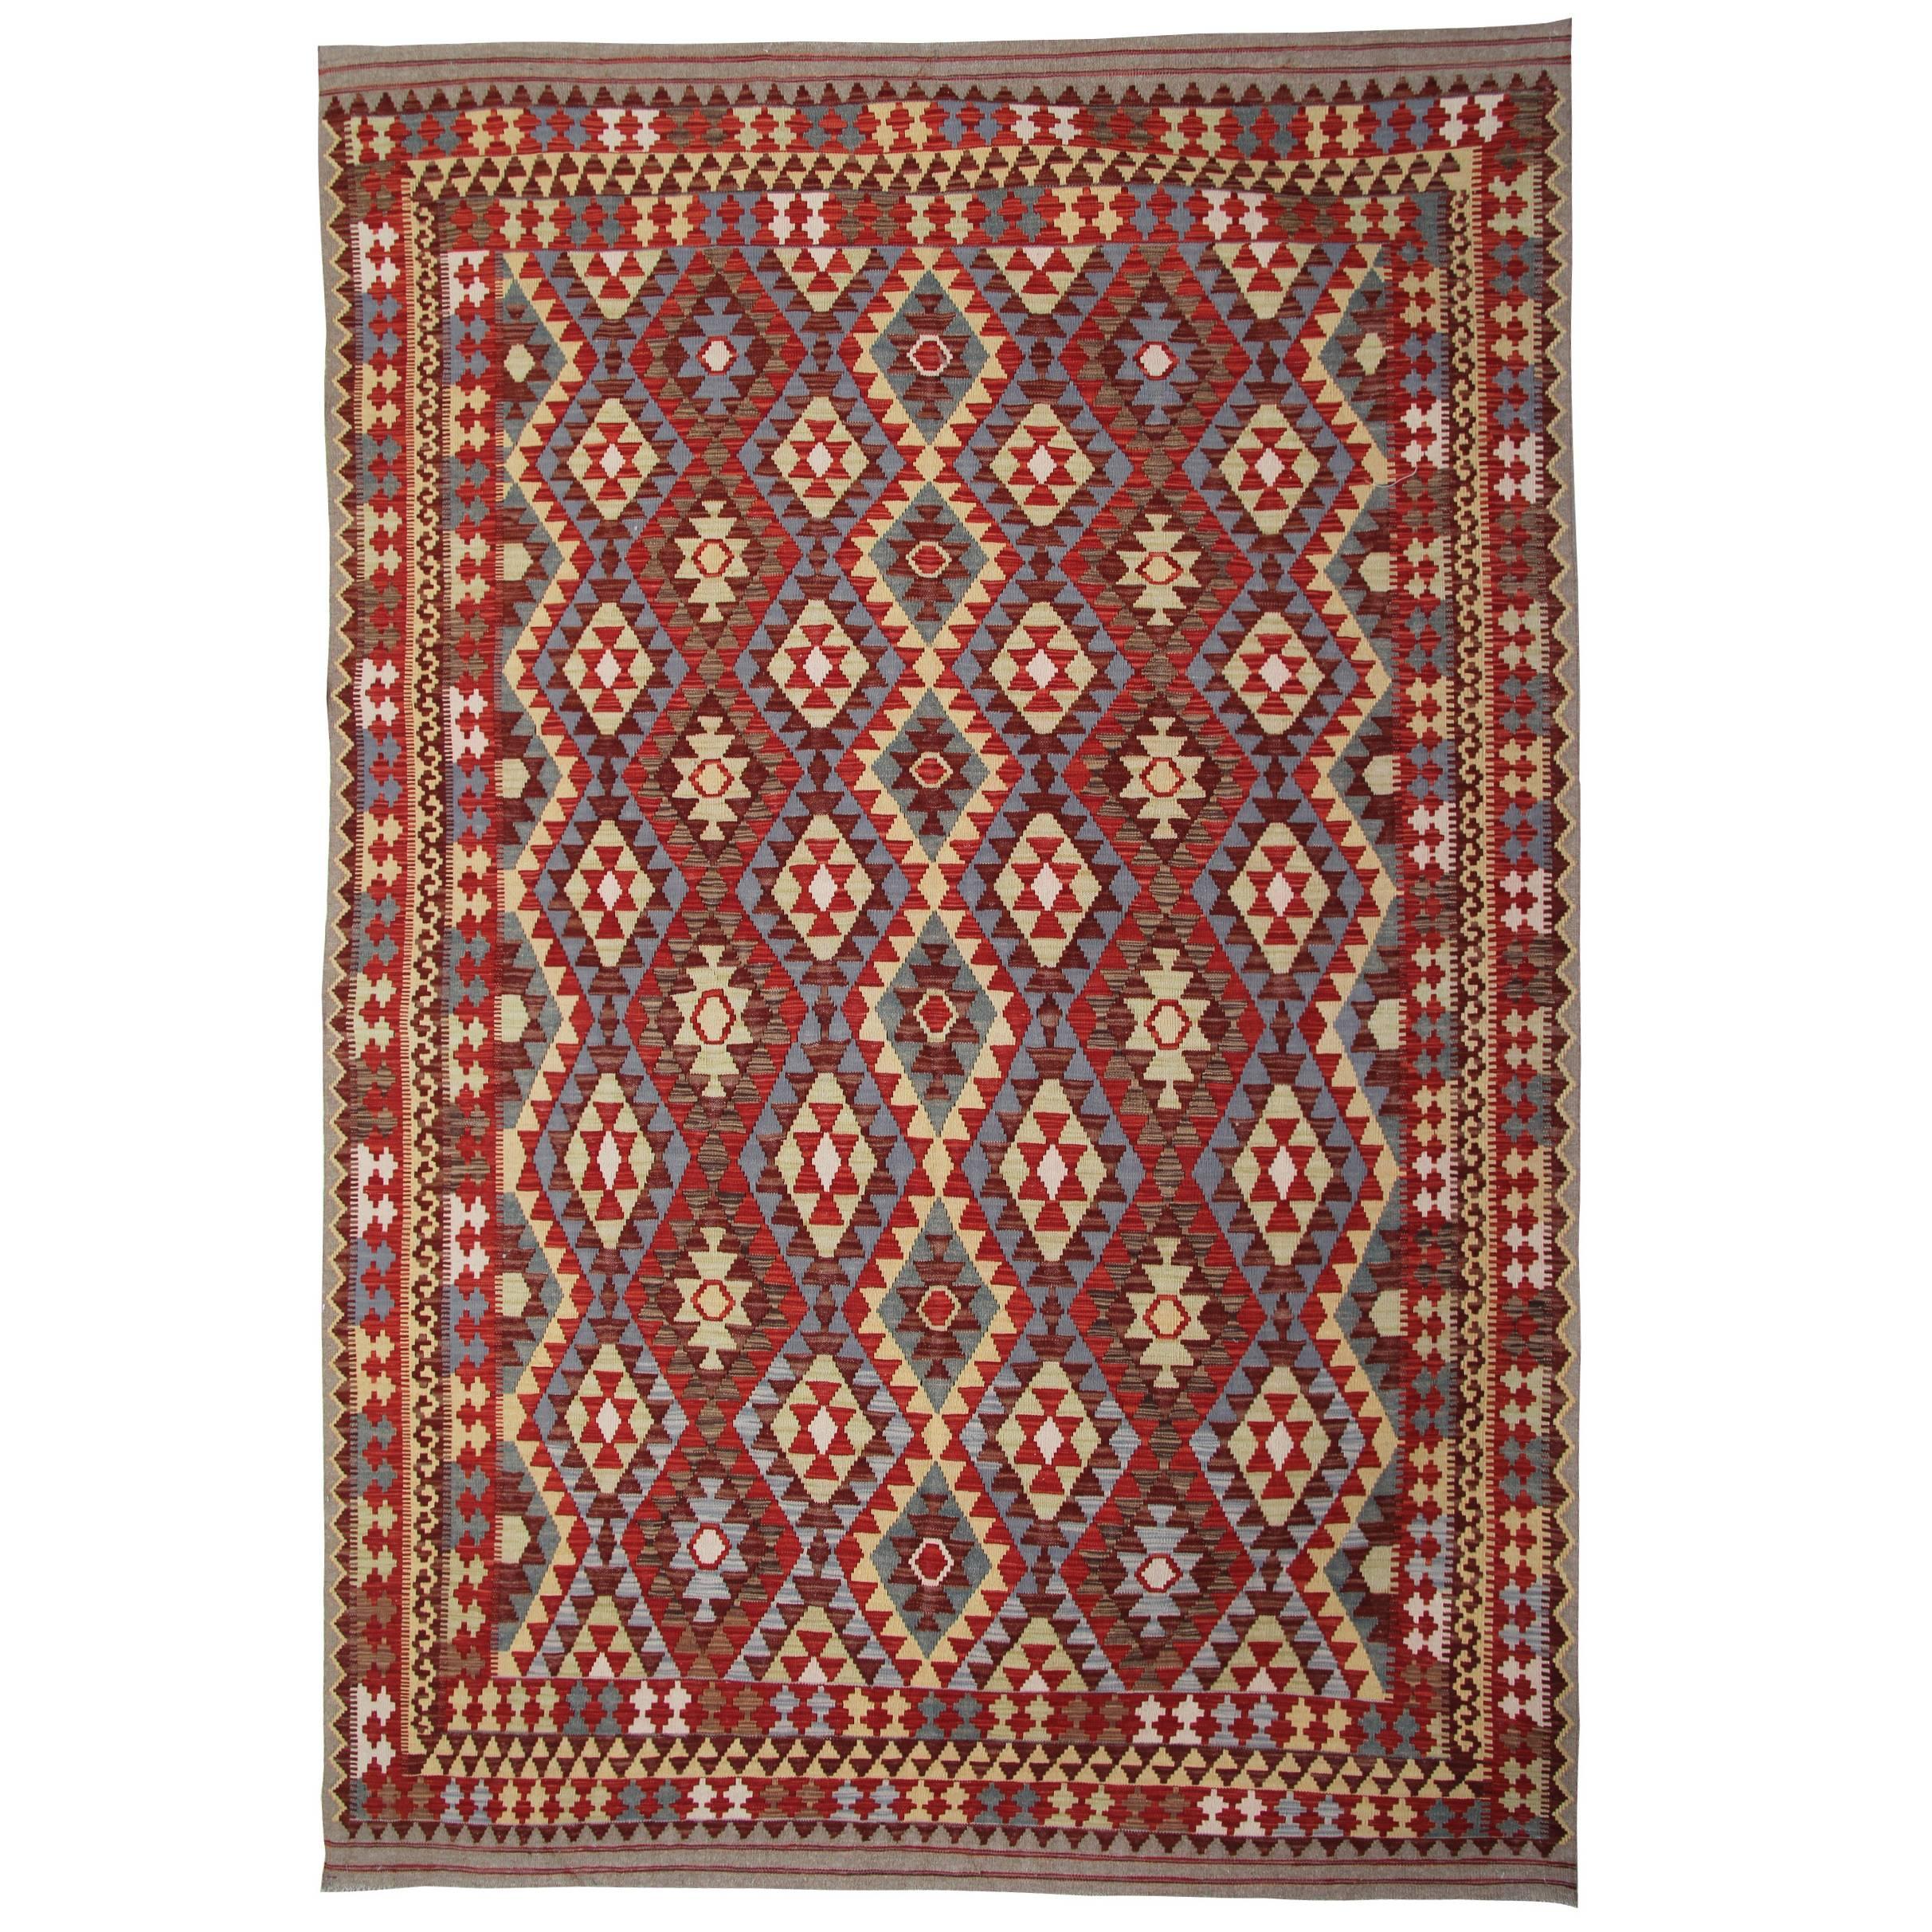 Afghan Kilim Rugs, Patterned Rug in Ivory, Red Rug Color